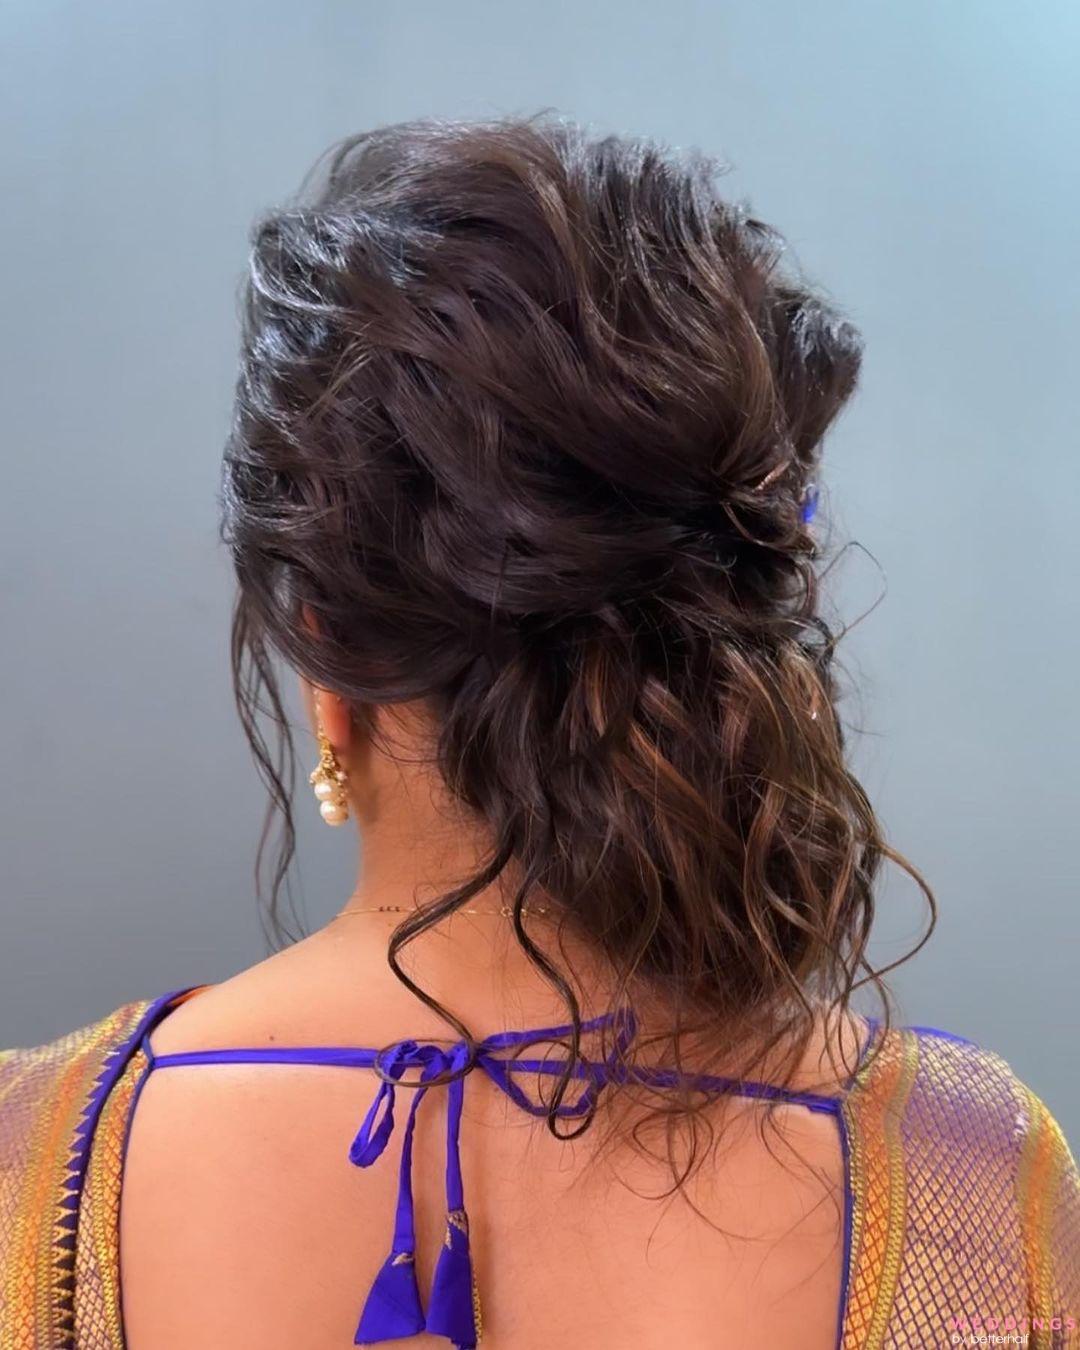 करवा चौथ के लिए हेयर स्टाइल।Bun Hairstyle with Saree।karwa chauth 2022 |  karwa chauth 2022 bun hairstyle with saree | HerZindagi